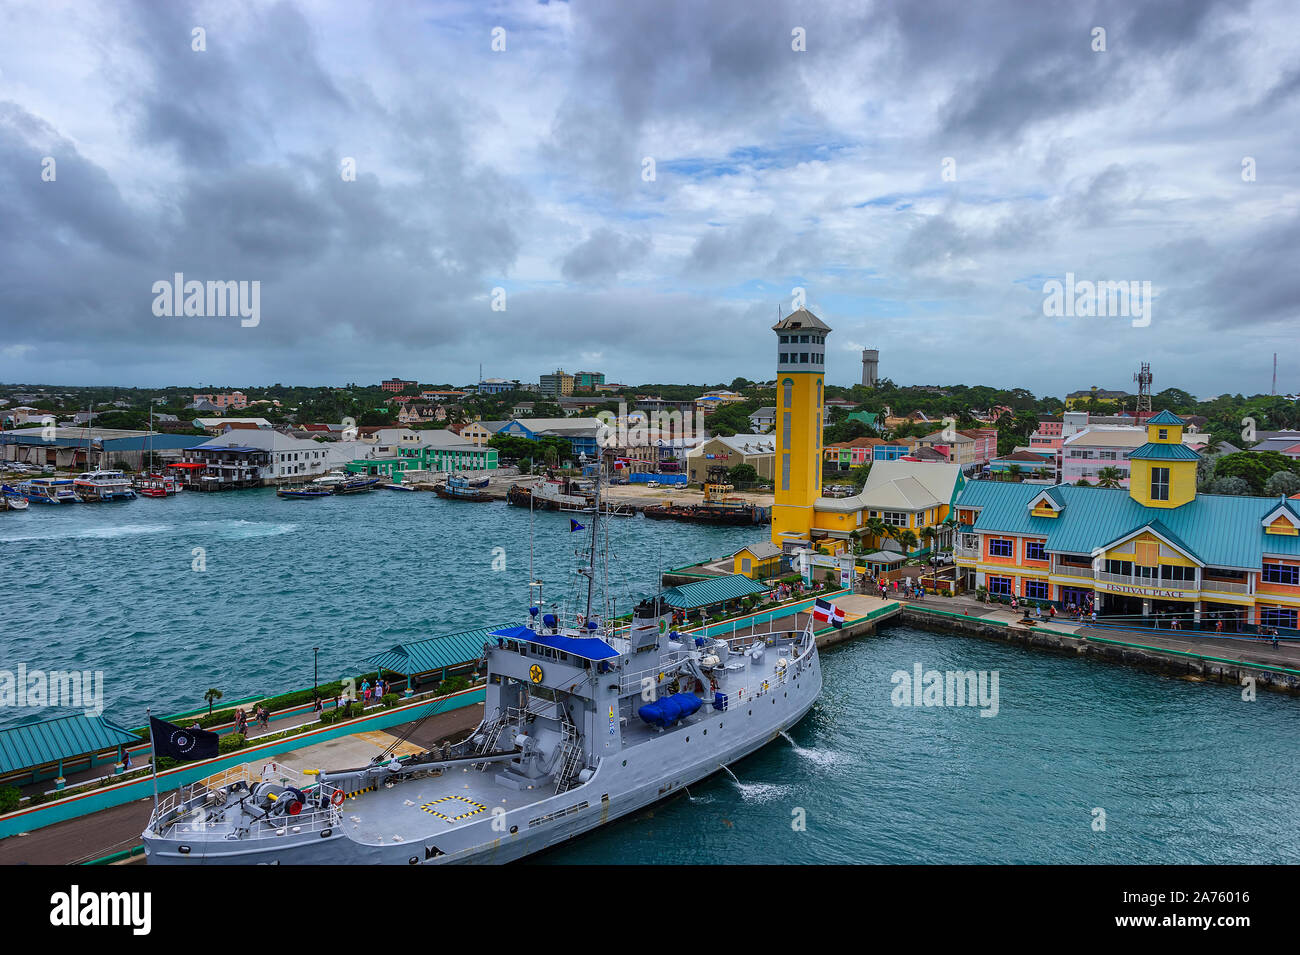 Nassau, Bahamas - septembre 21,2019 : Views from à bord d'un bateau de croisière à Prince George Wharf à Nassau Harbour sur l'île de New Providence. Banque D'Images